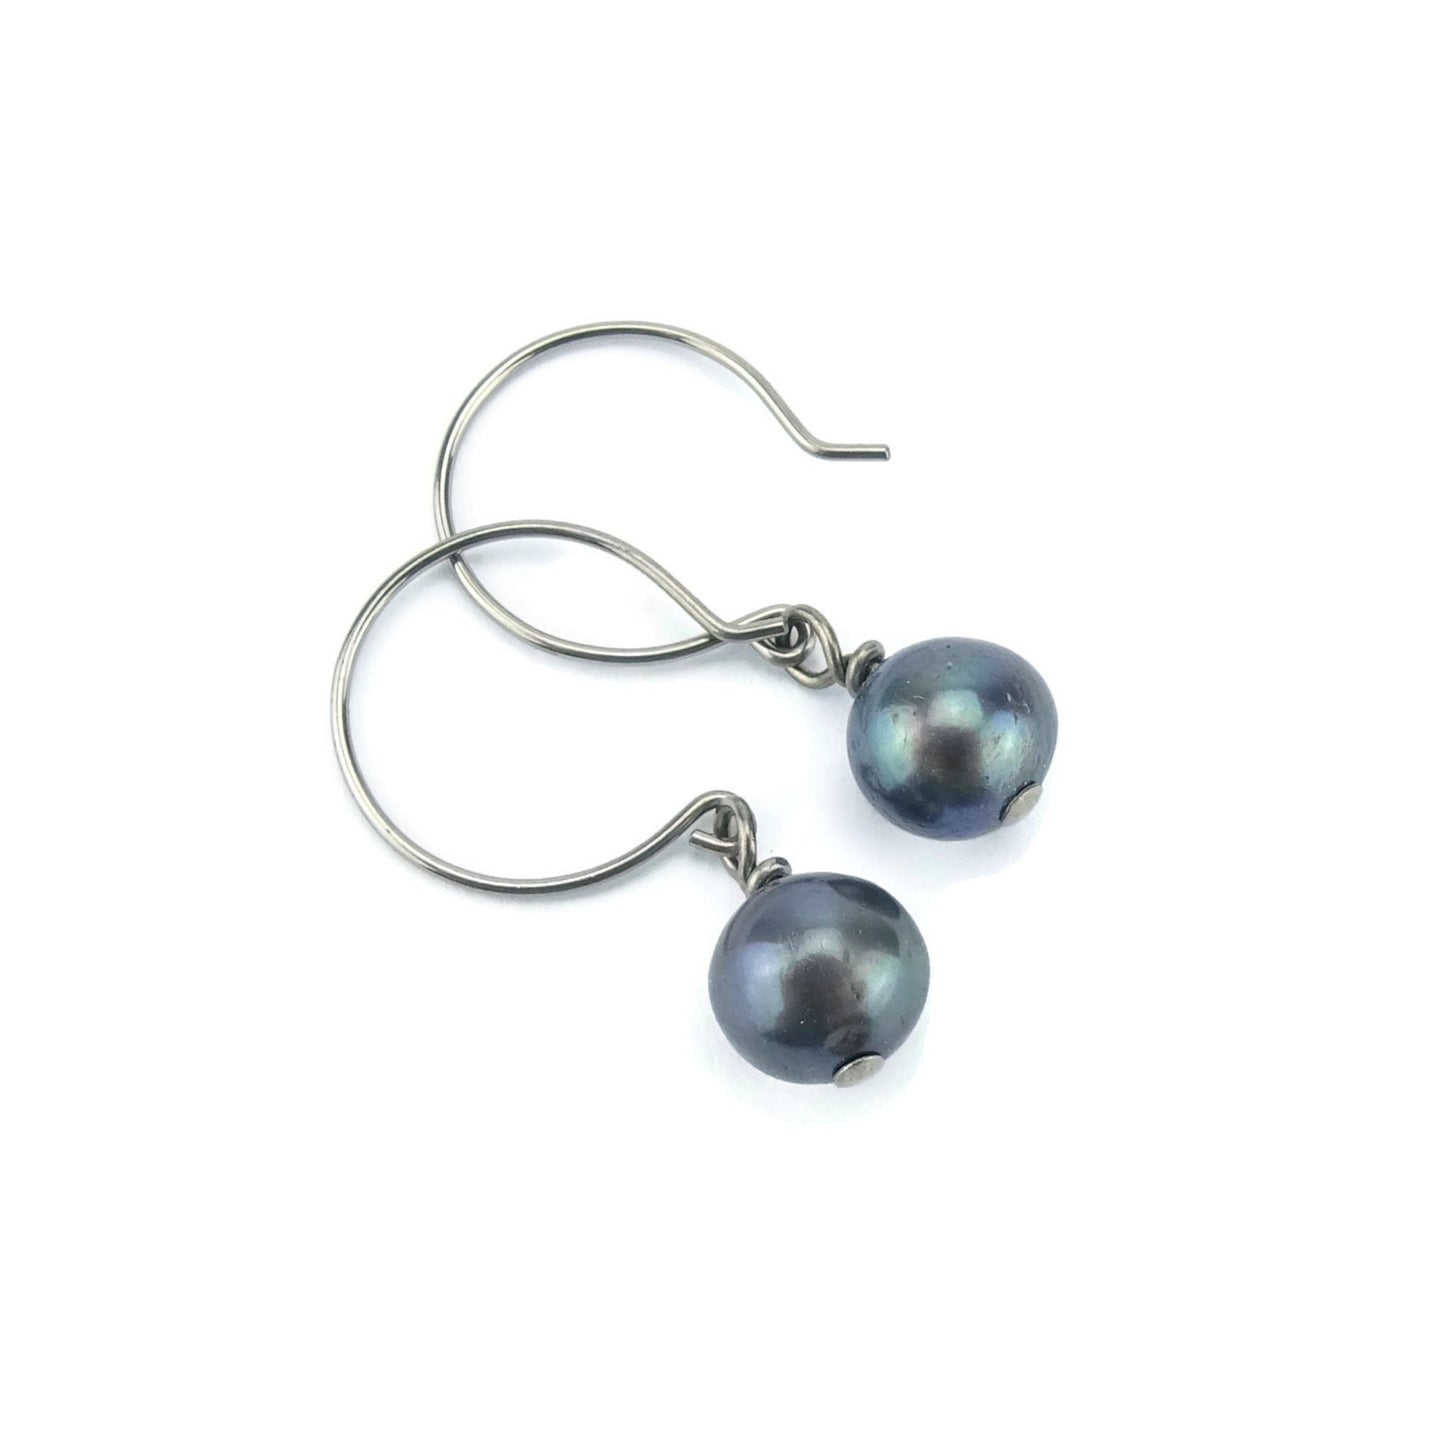 Black Pearl Earrings, Niobium Earrings, Freshwater Pearls Nickel Free Earrings for Sensitive Ears, Hypoallergenic Titanium Earrings